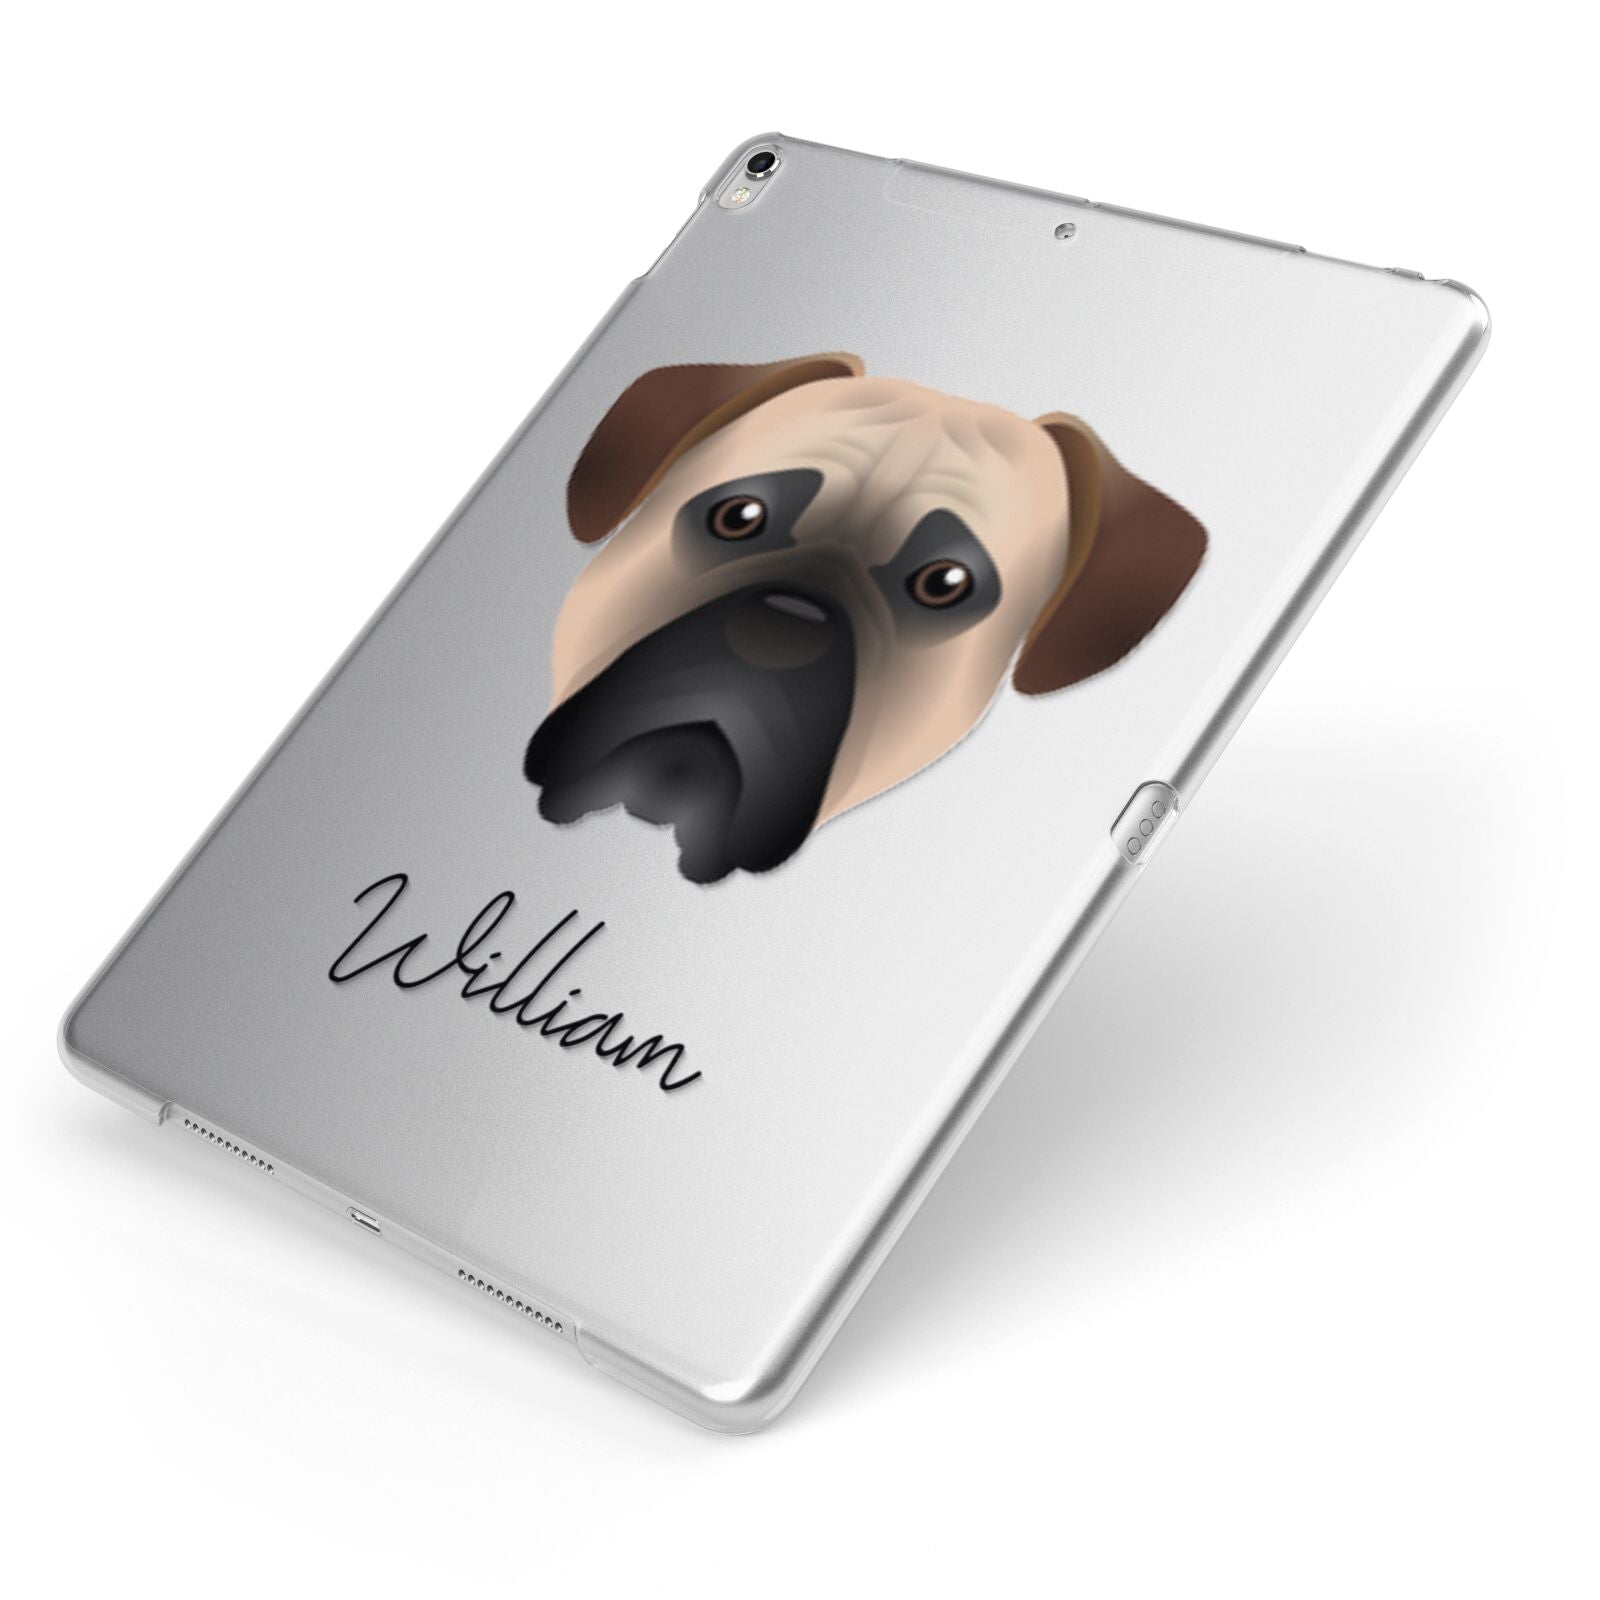 Bullmastiff Personalised Apple iPad Case on Silver iPad Side View